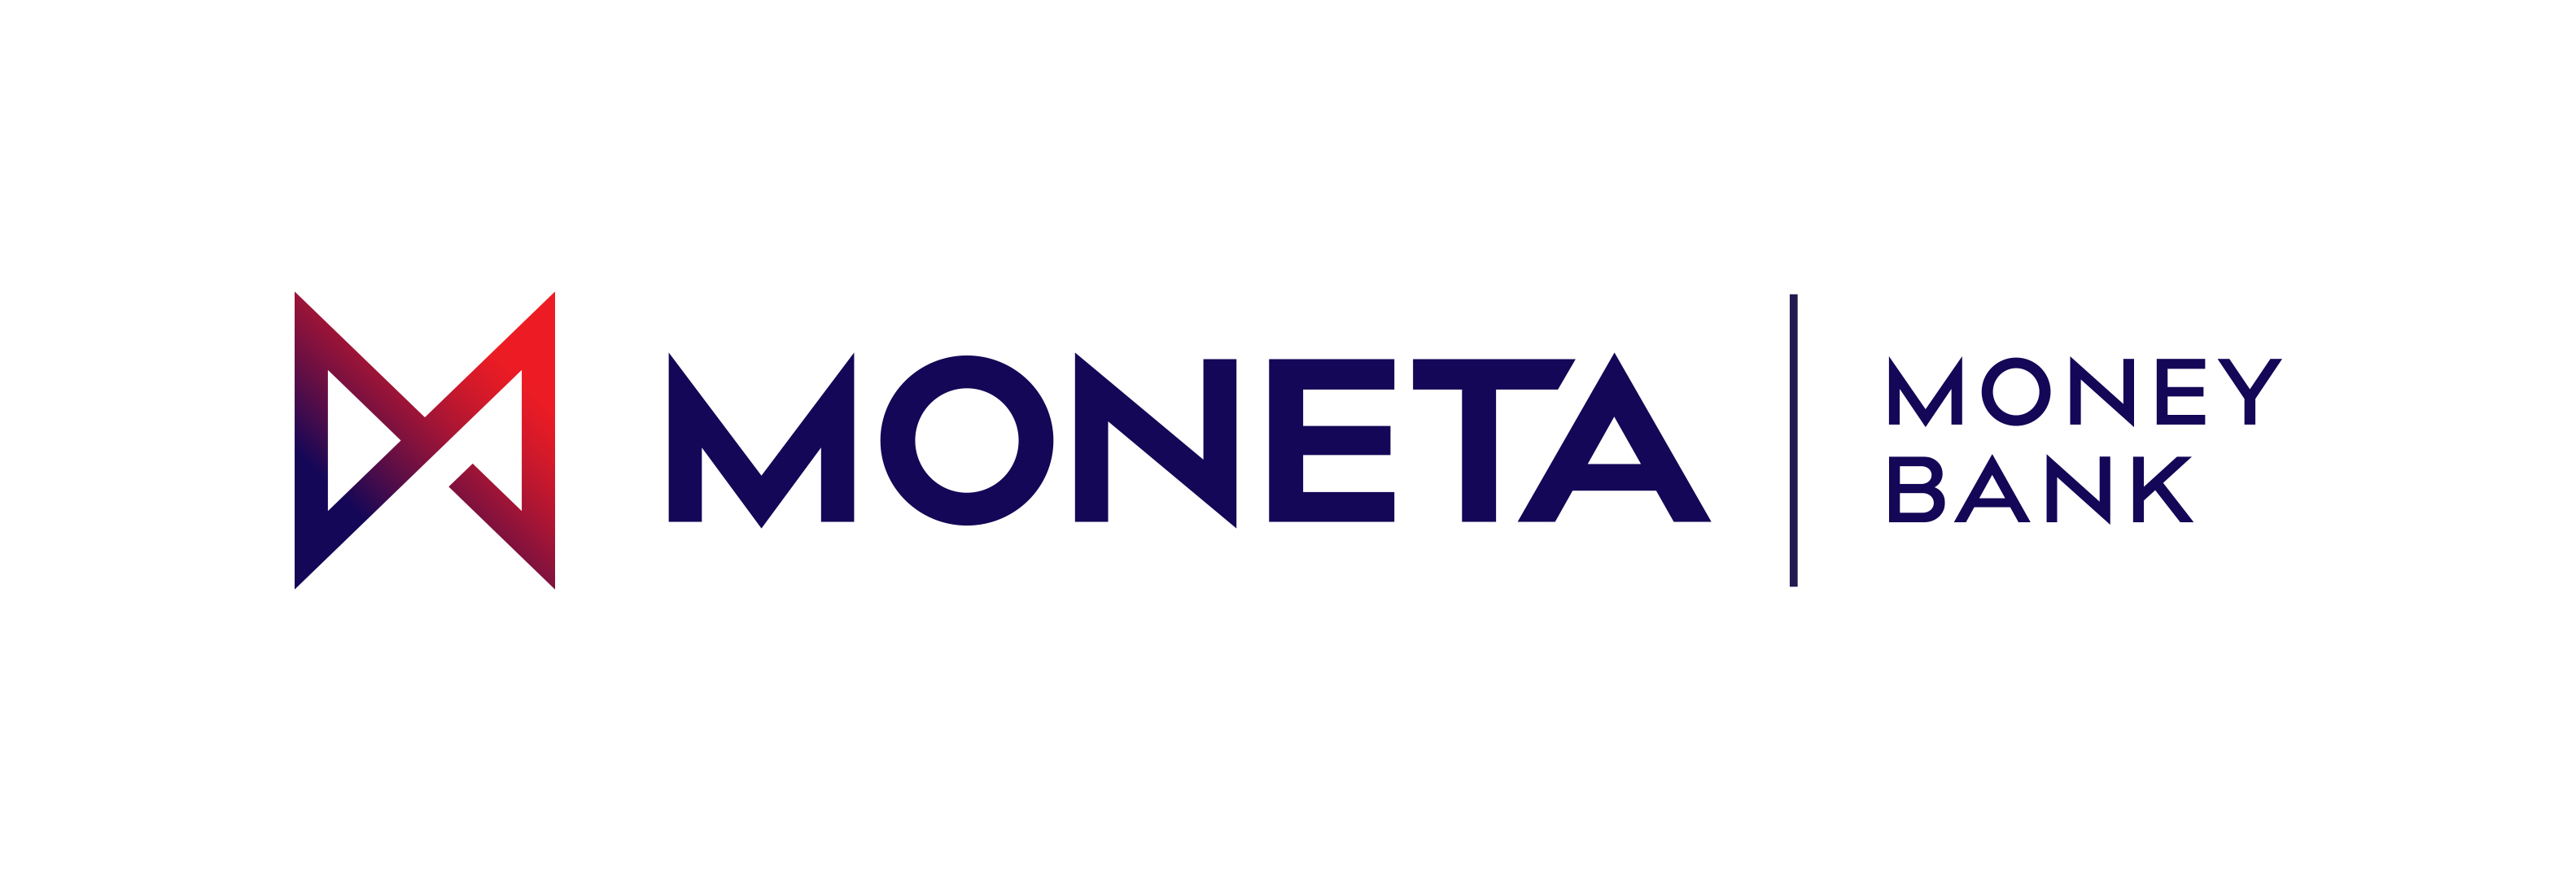 MONETA Money Bank, a.s. | Byznys pro spoleÄnost